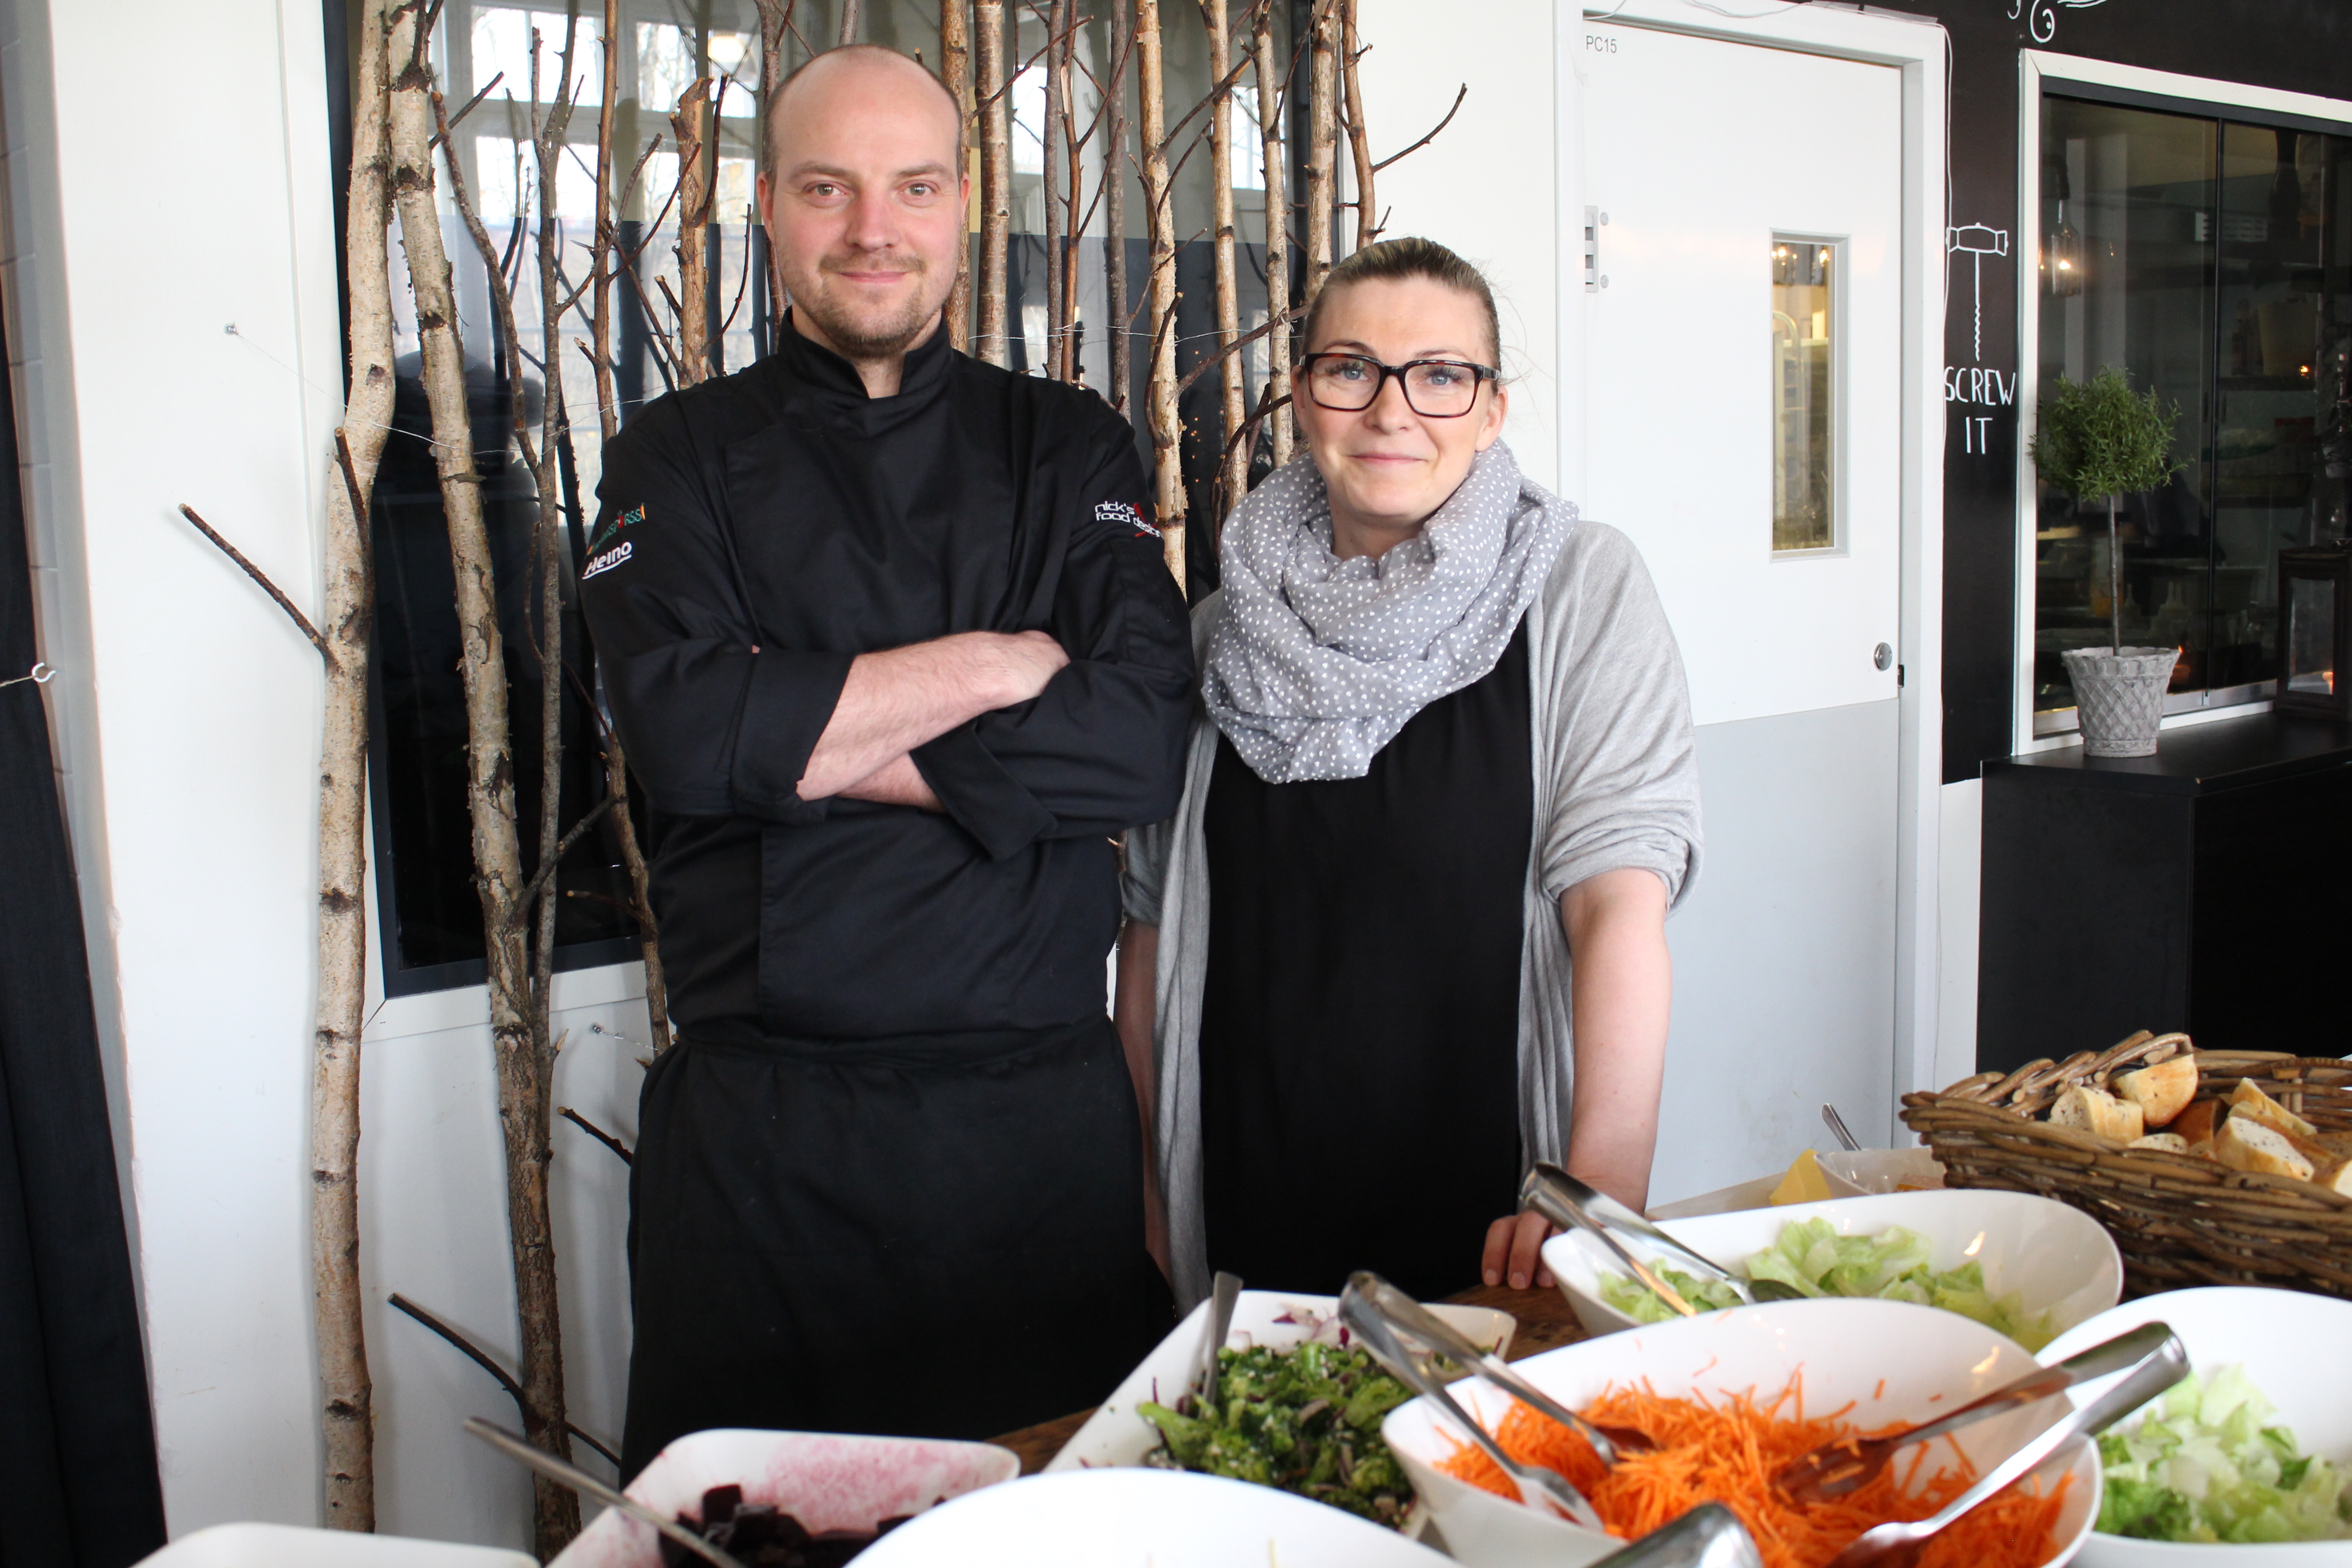 Pitopalvelu Nick's Food Designin keittiöpäällikkö Niklas ja yrittäjä Eva Halenius kertovat, että keikkaa tehdään eniten jouluna, keväällä ja kesällä. Karonkka ja häät työllistävät heitä paljon. Kuva: Anna Parviainen